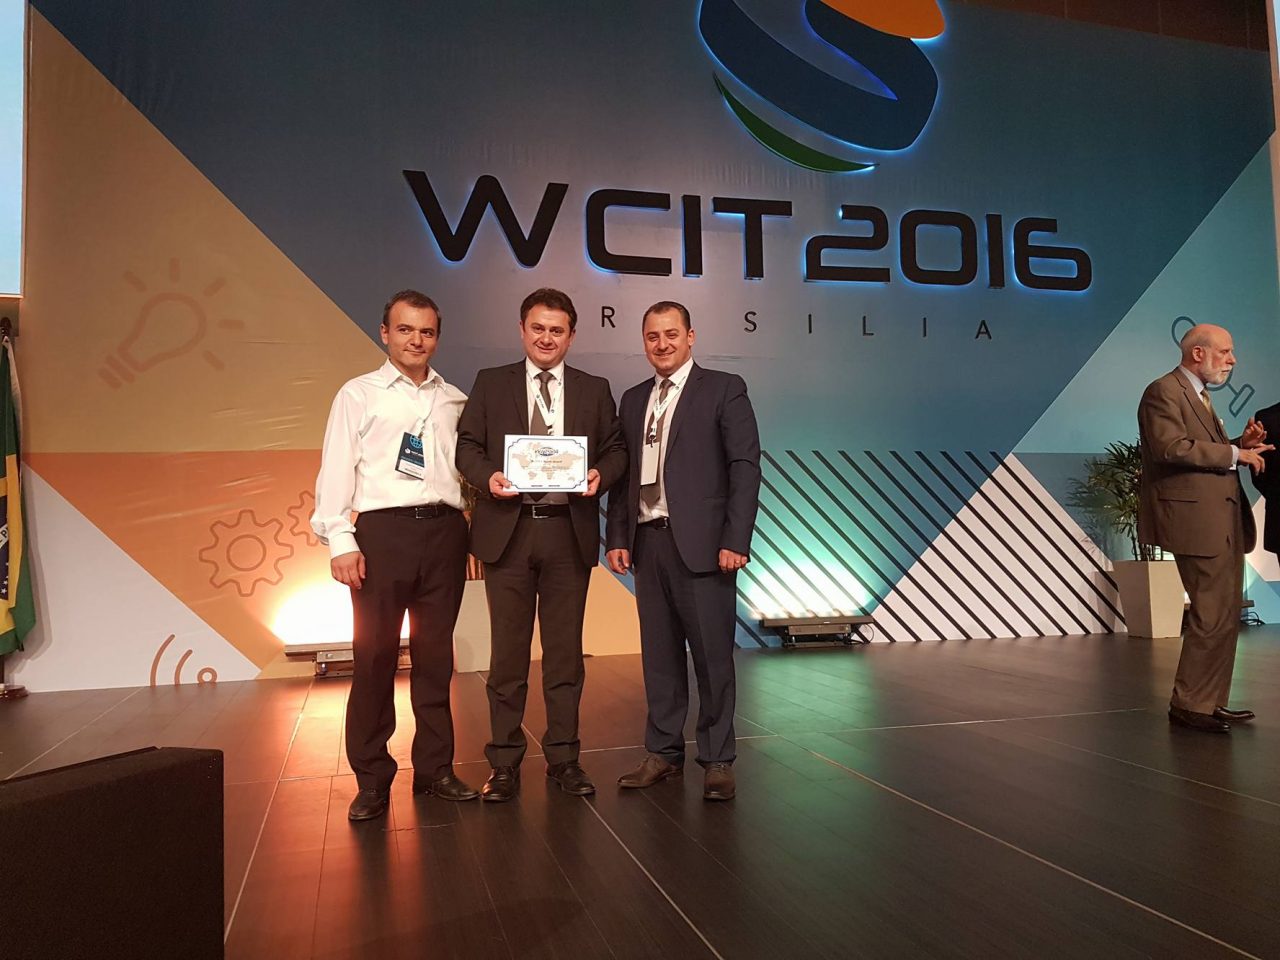 Հայկական նախագծերը WCIT համաժողովում մրցանակի են արժանացել